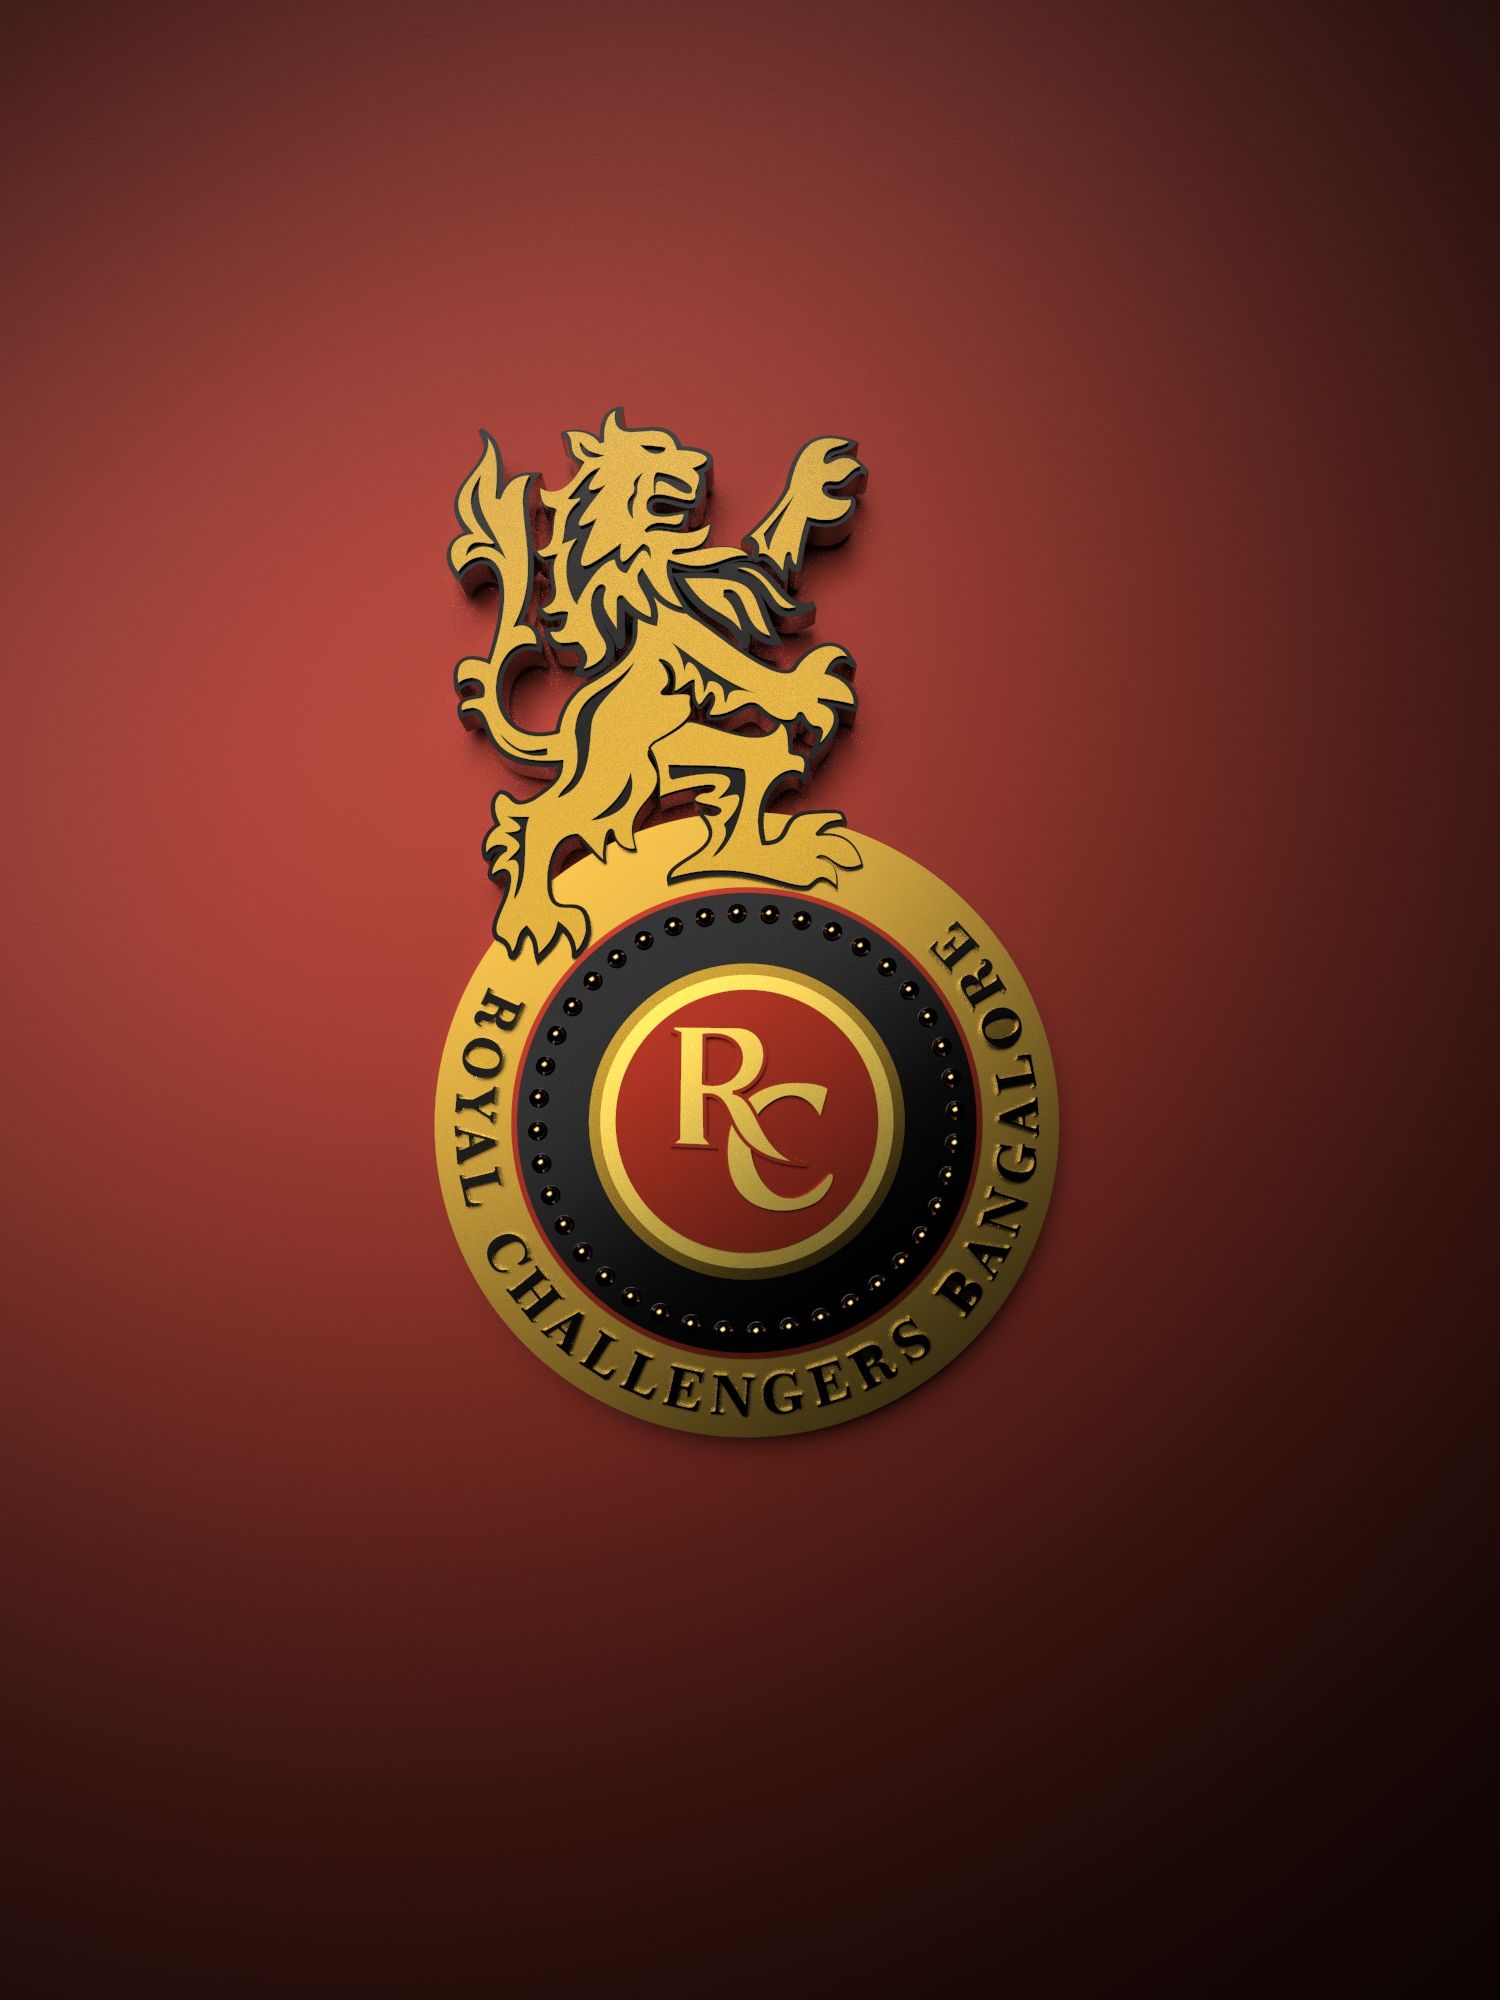 Royal Challengers Bangalore IPL metallic logo poster painting. Royal challengers bangalore, Metallic logo, Ipl